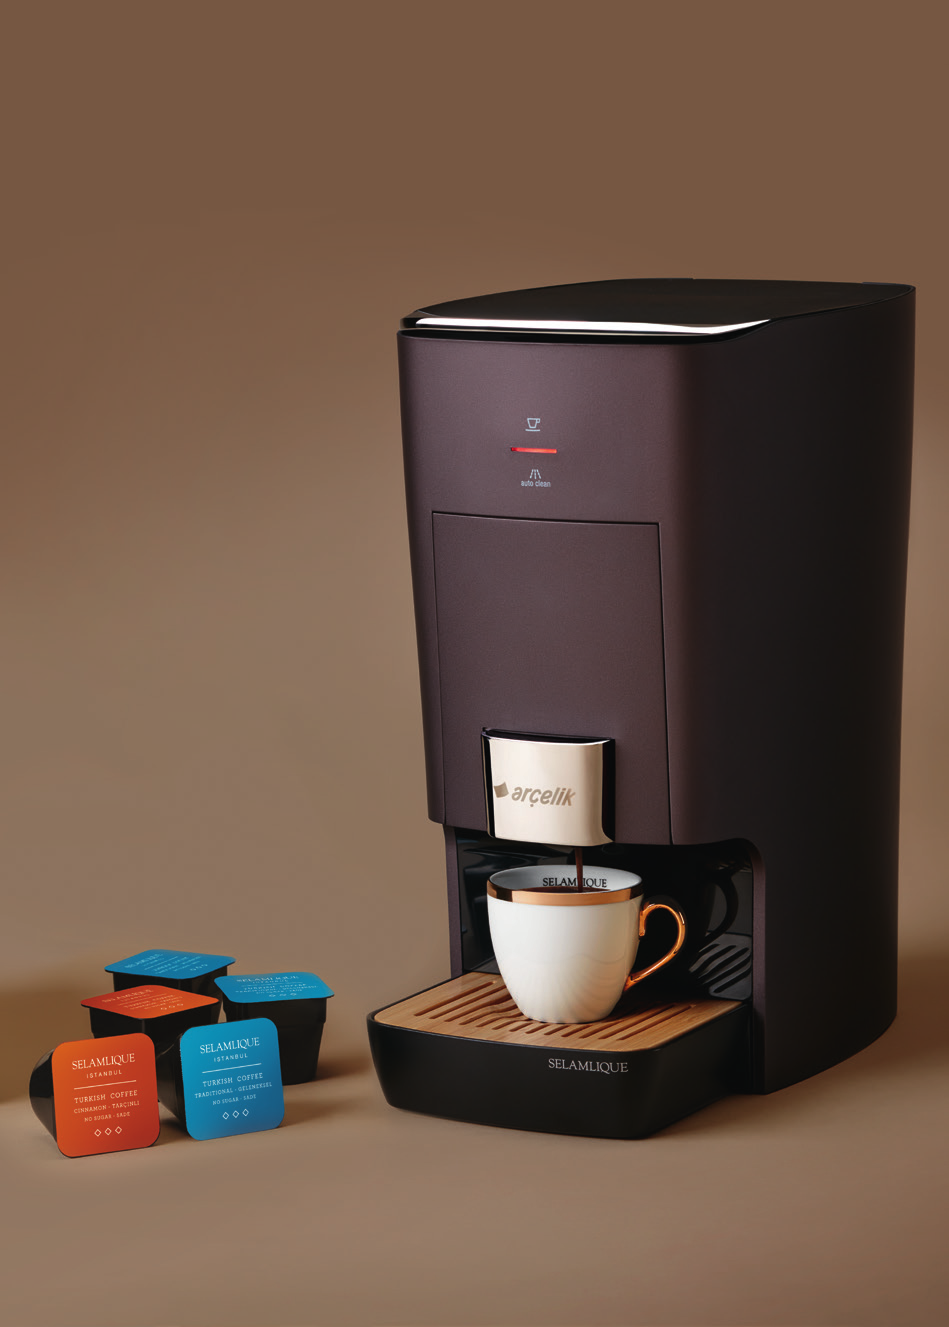 K 3500 Arçelik Selamlique Kapsüllü Türk Kahvesi Makinesi Kapsül teknolojisi sayesinde farklı aromalarda ve farklı şeker oranlarında kahve seçenekleri Kapsül kullanımı sayesinde uzun süre tazelik